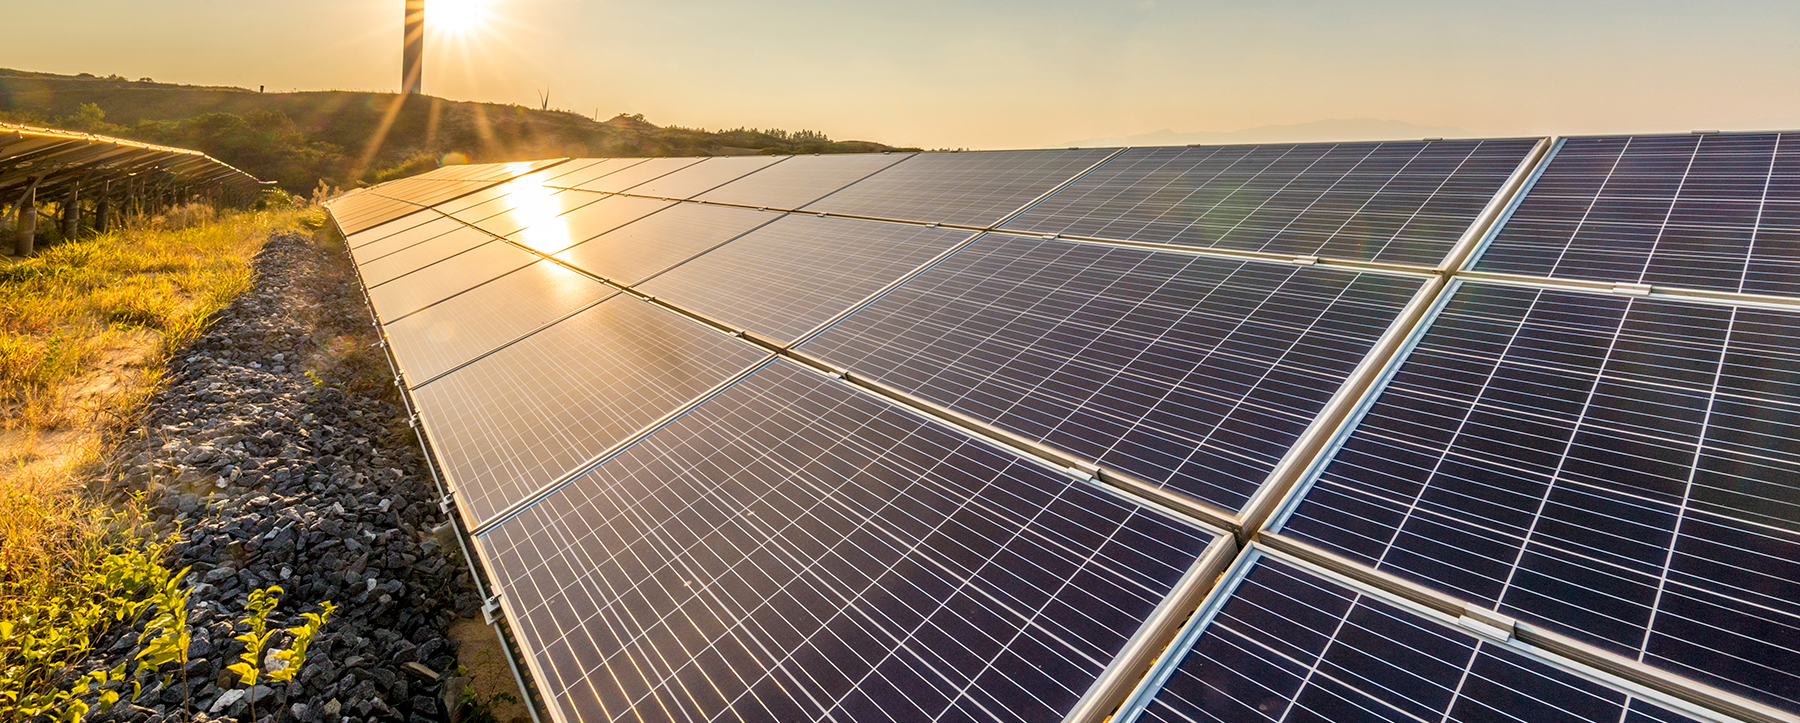 Painéis de energia solar ajudam a economizar energia no verão